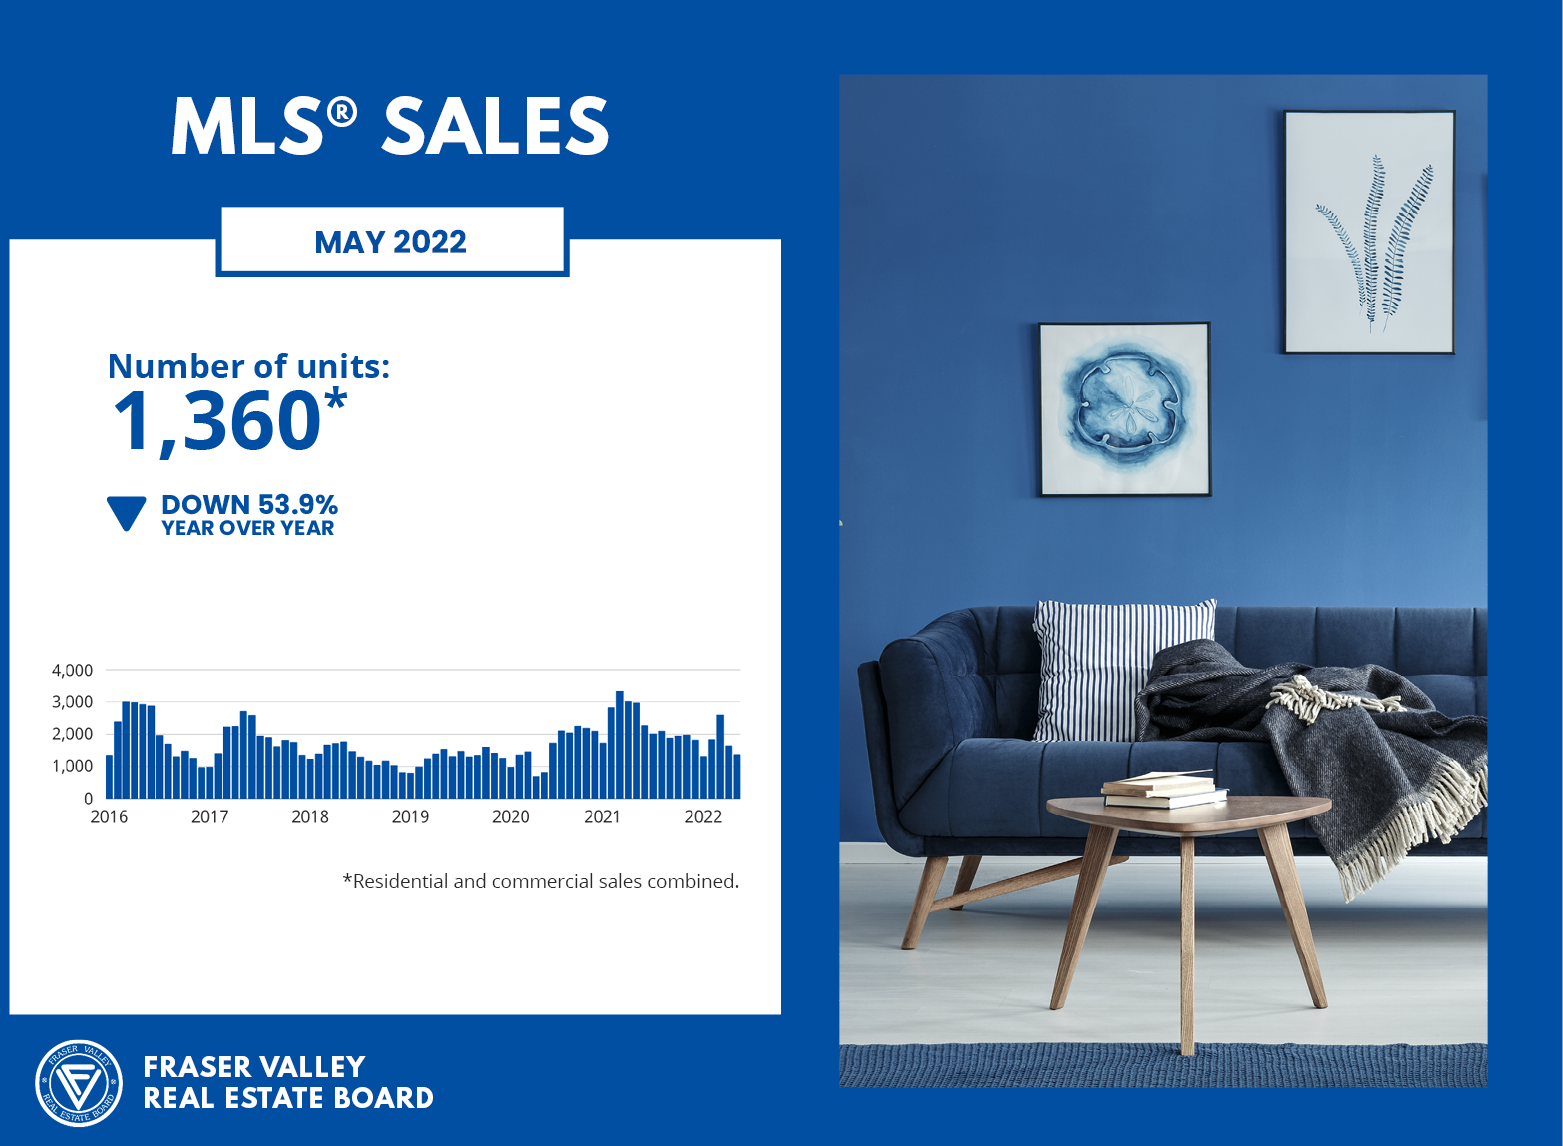 MLS Sales May 2022 - Fraser Valley Housing Market Statistics